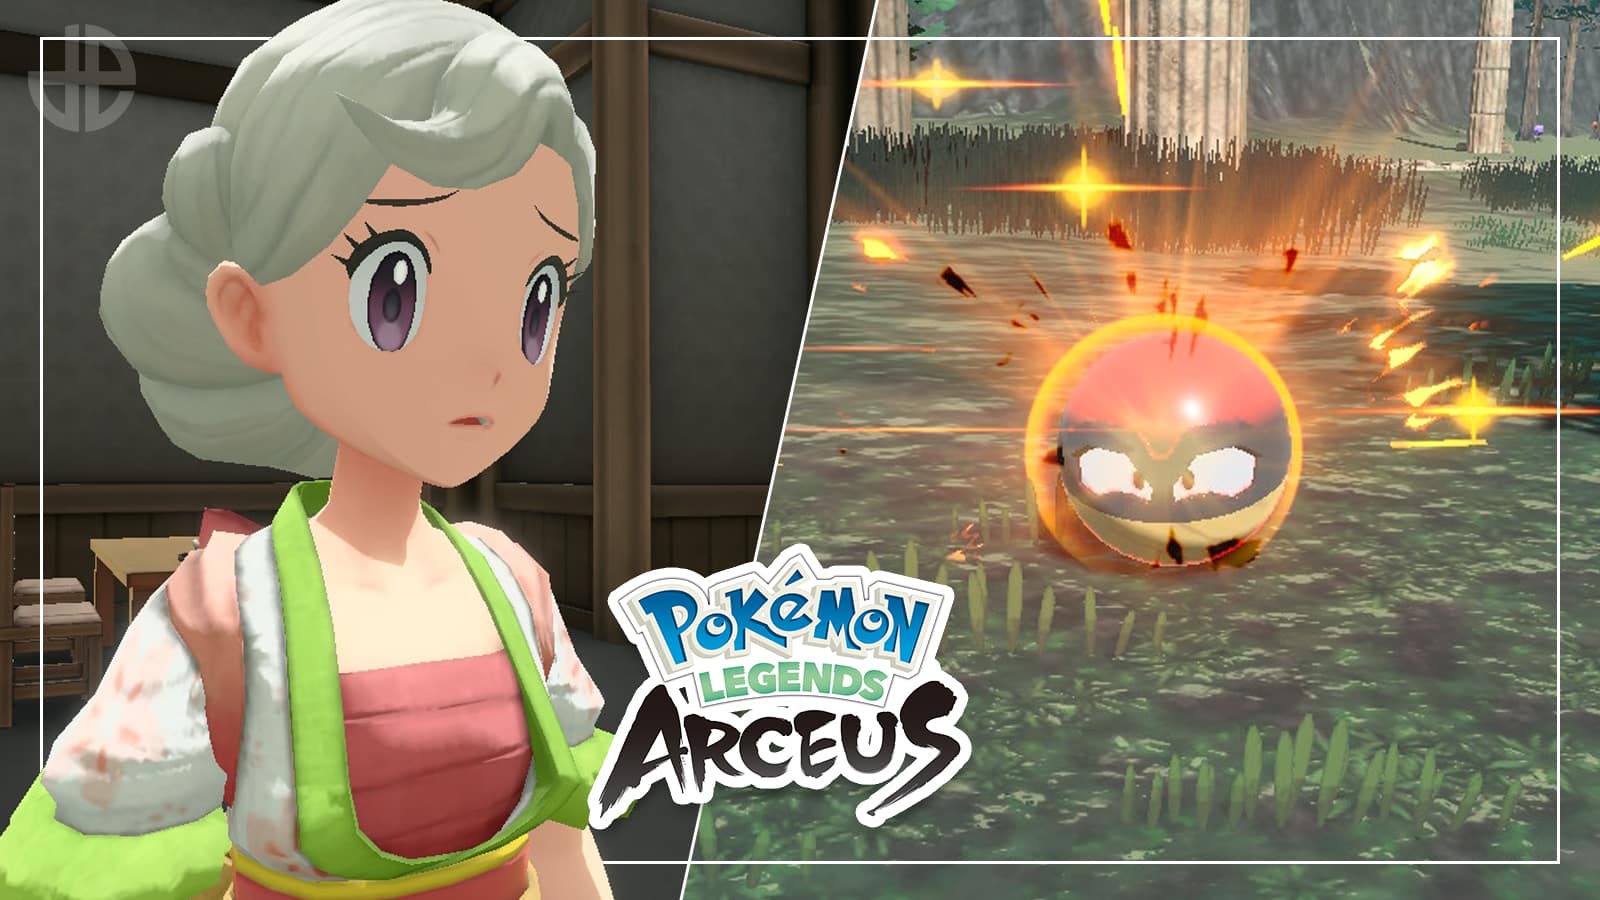 How to catch shiny Pokémon in Legends: Arceus